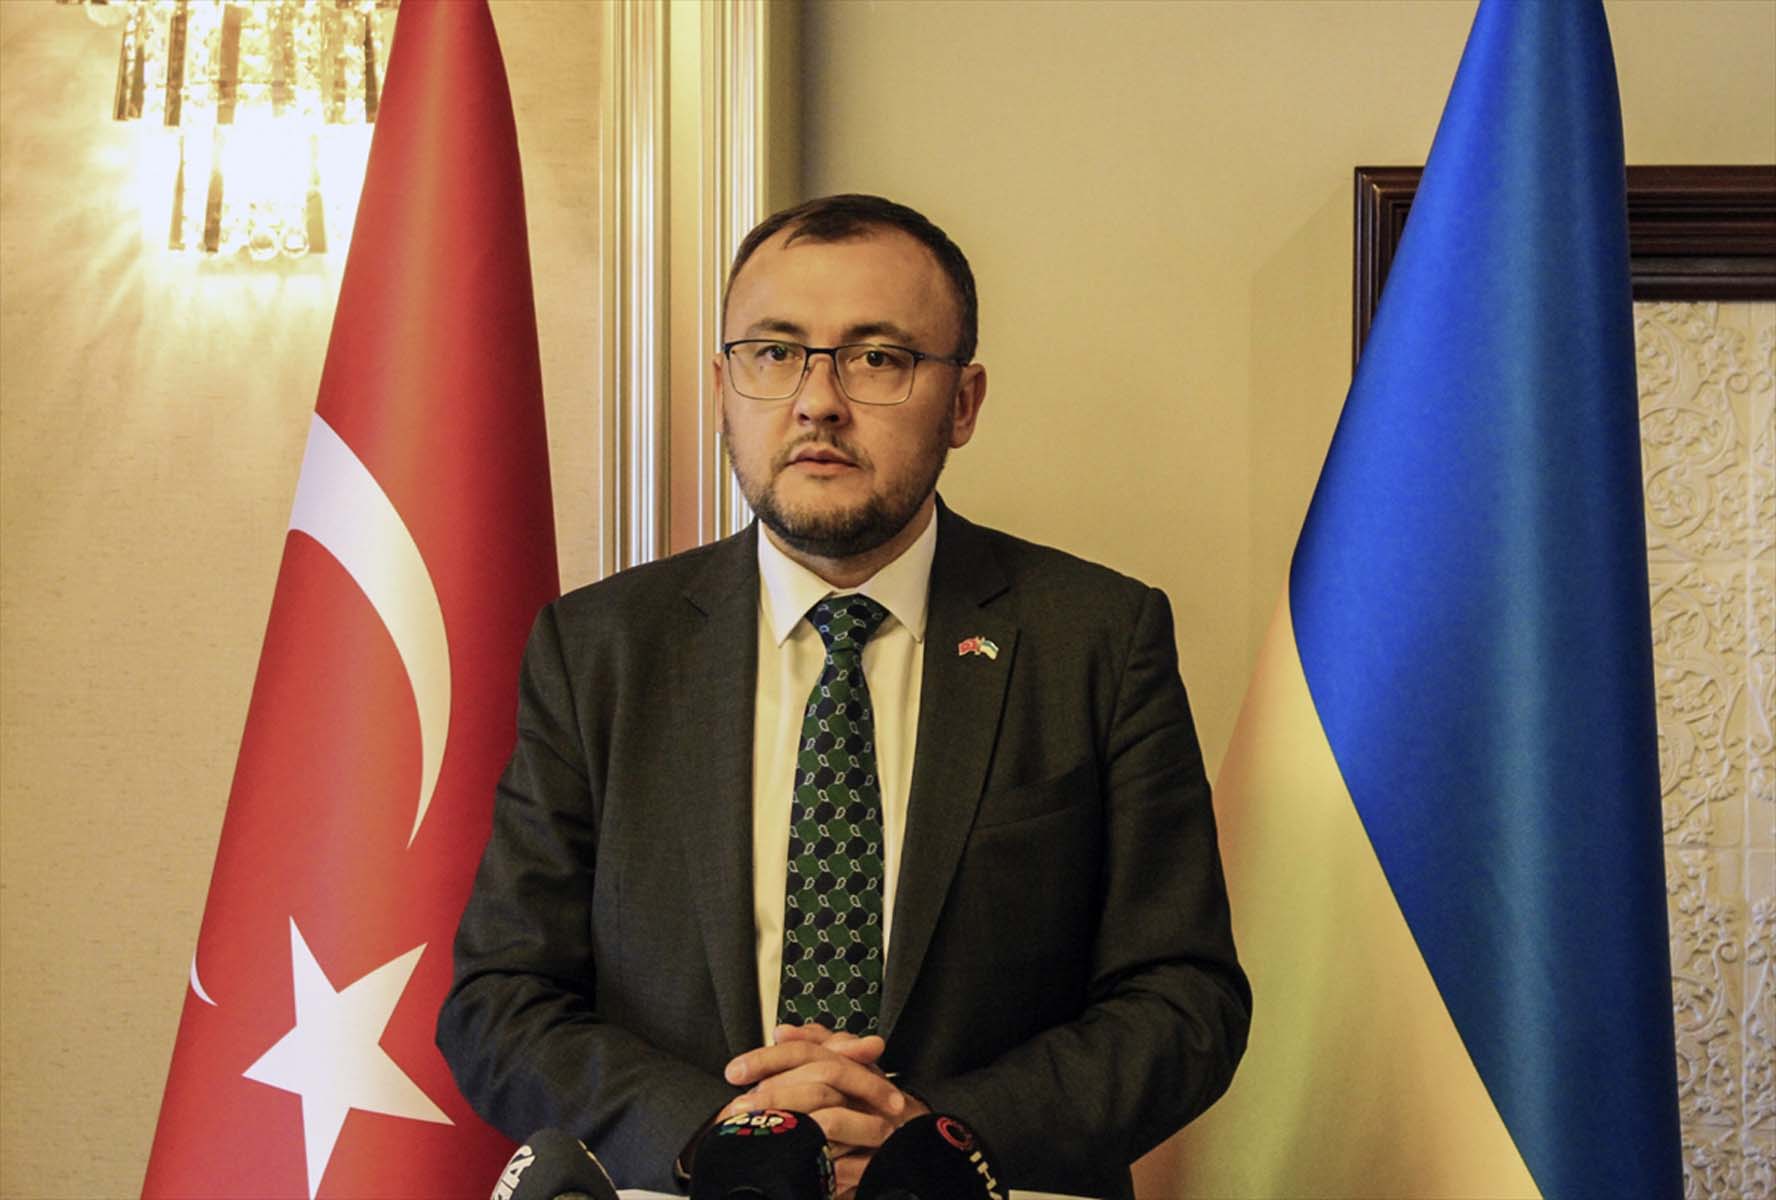 Ukrayna'nın Ankara Büyükelçisi Vasyl Bodnar'dan çarpıcı açıklama: Bölgede askeri saldırı ihtimali var 